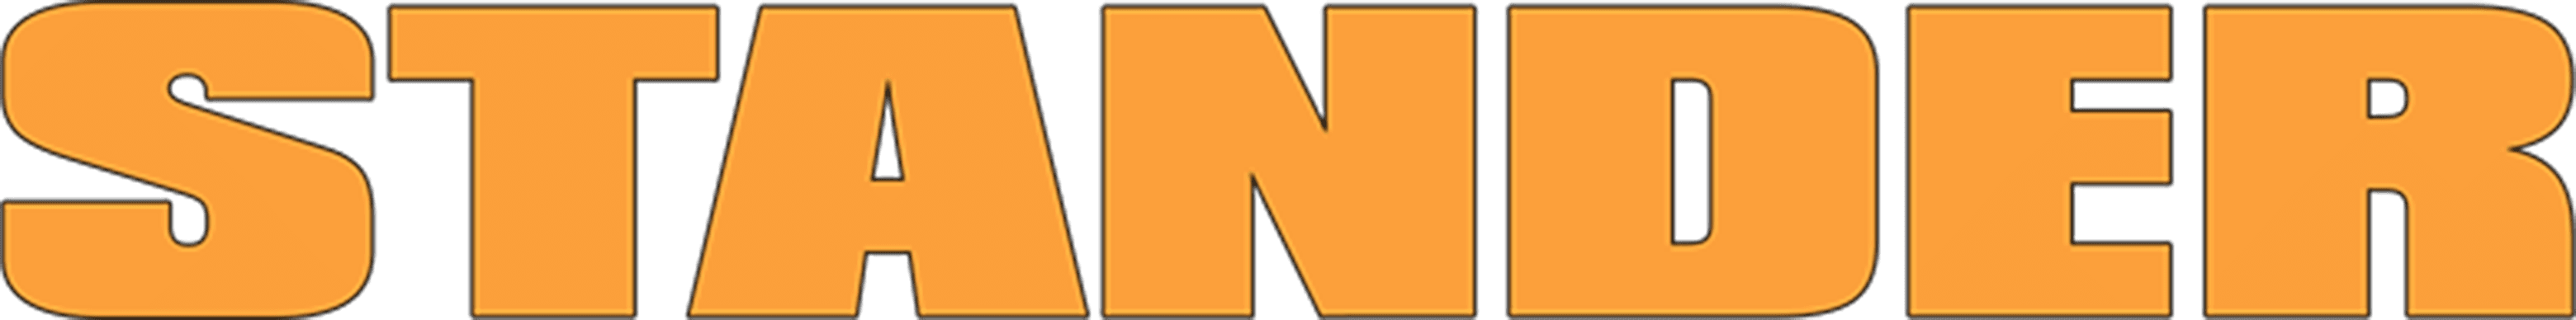 Stander logo